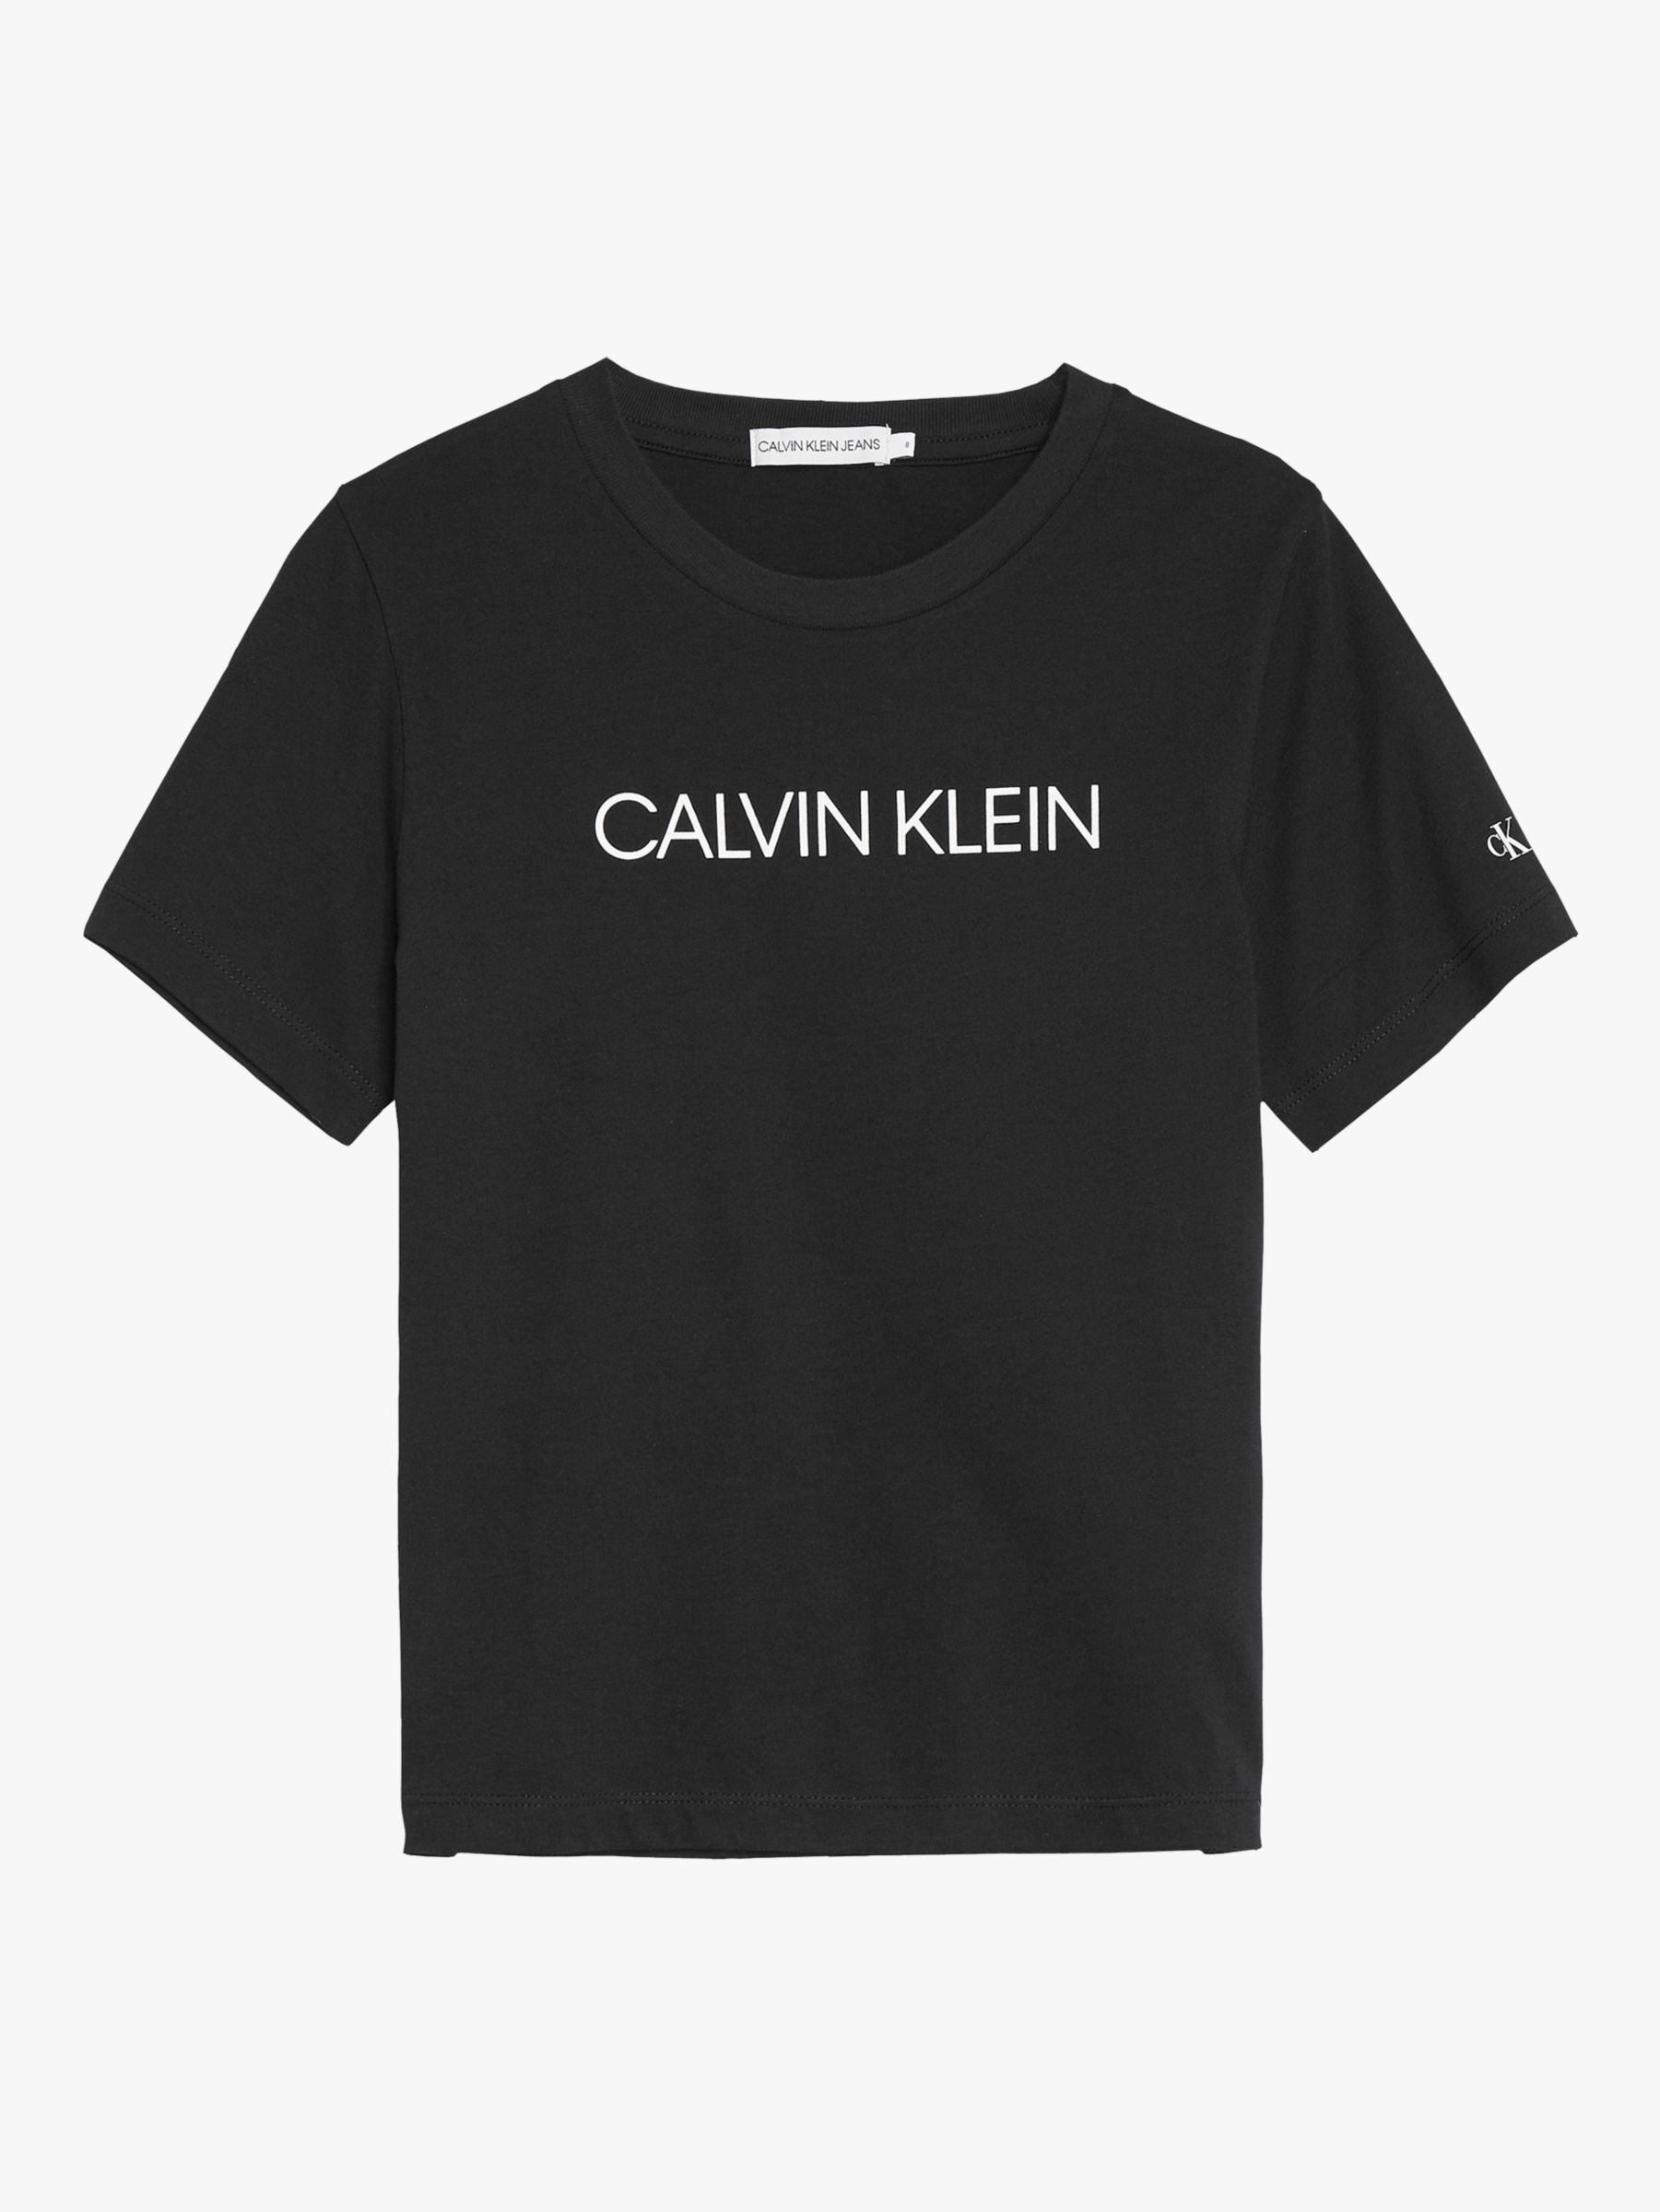 Футболка с логотипом учреждения из органического хлопка для мальчиков Calvin Klein, ск черный